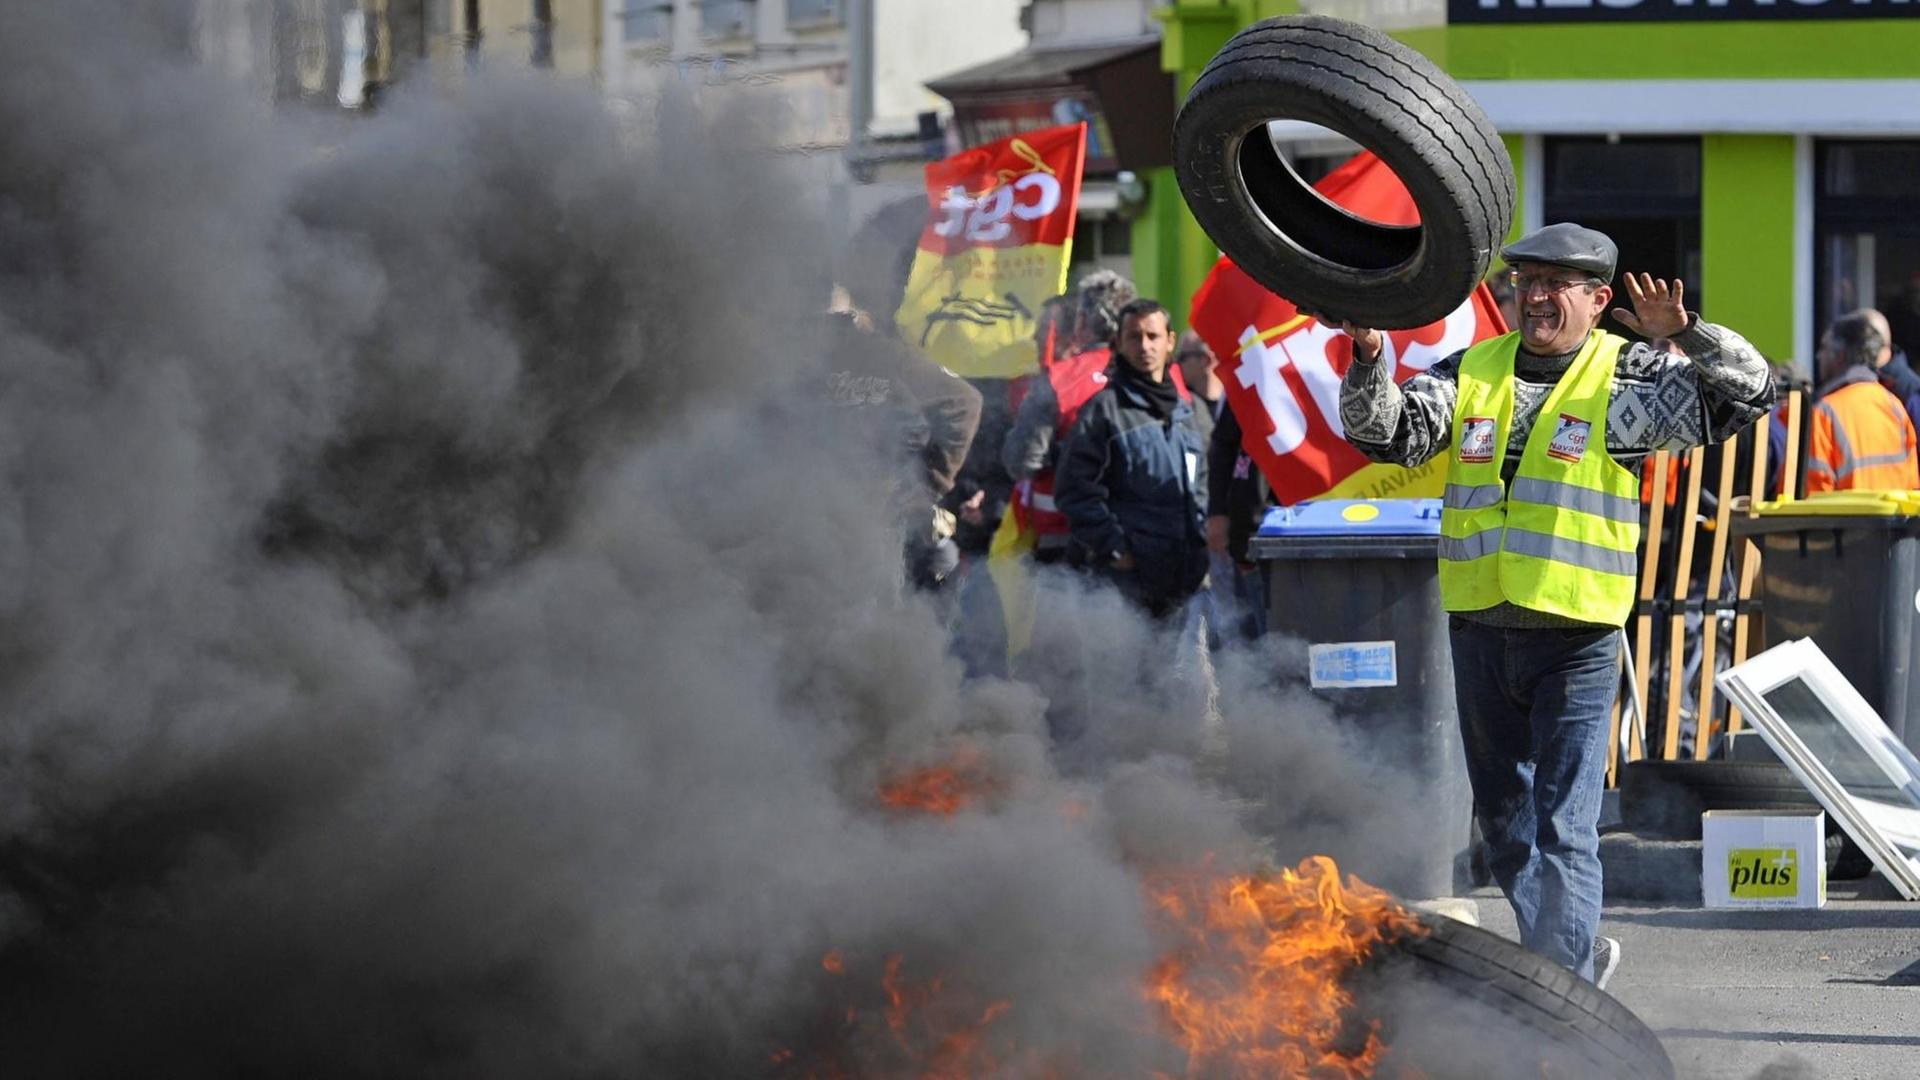 Streikende haben die Zufahrt zu einer Straße mit brennenden Autoreifen blockiert, um gegen die Arbeitsmarkt-Reform der französischen Regierung zu protestieren.